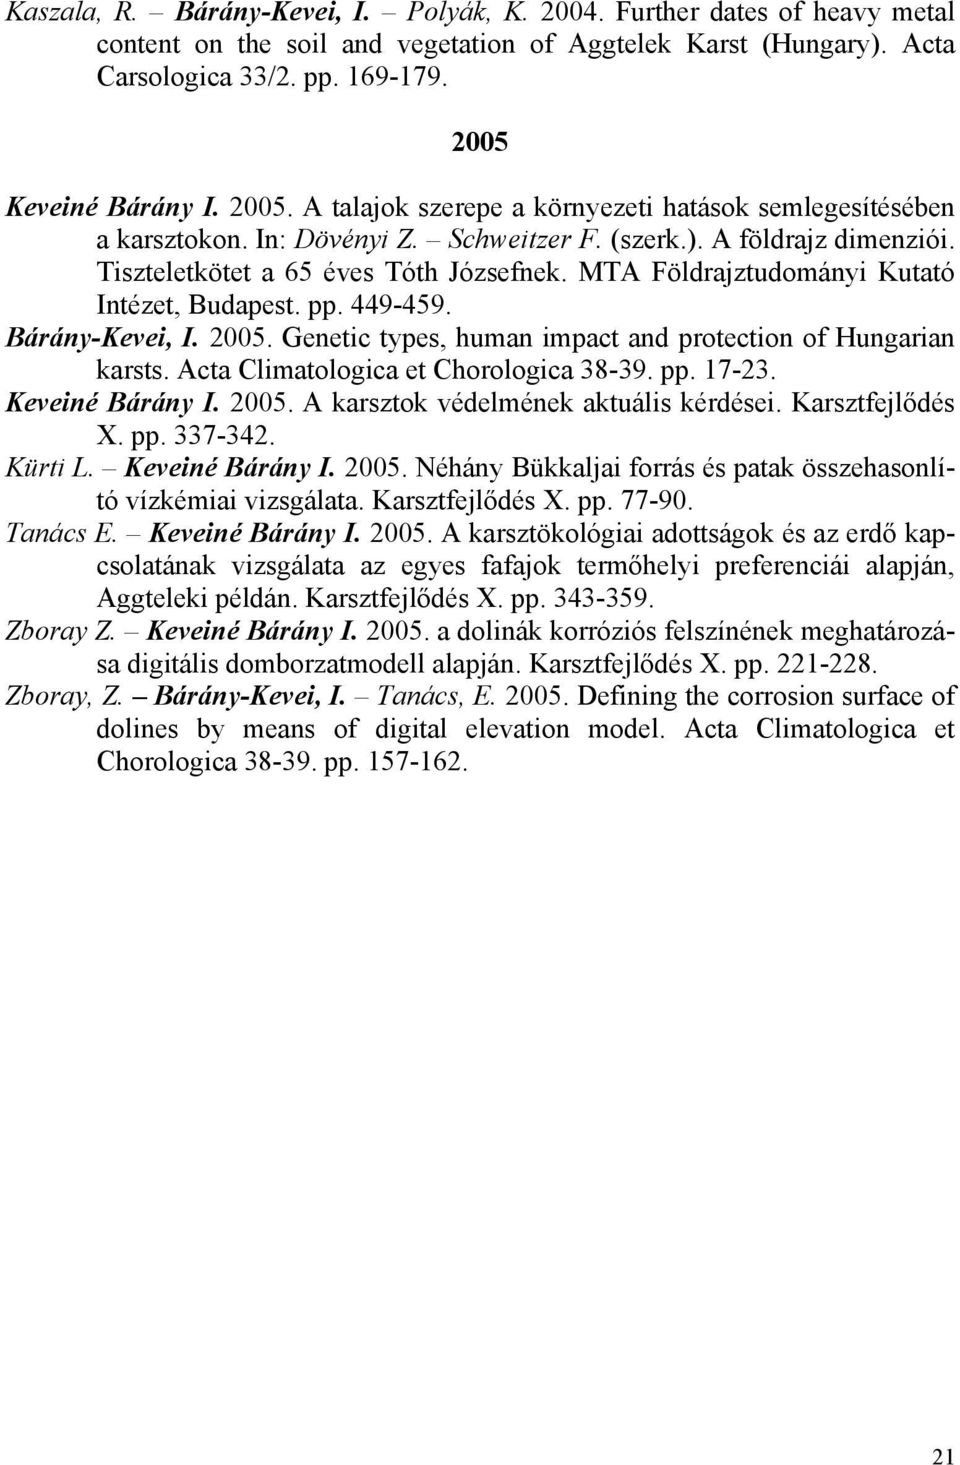 MTA Földrajztudományi Kutató Intézet, Budapest. pp. 449-459. Bárány-Kevei, I. 2005. Genetic types, human impact and protection of Hungarian karsts. Acta Climatologica et Chorologica 38-39. pp. 17-23.